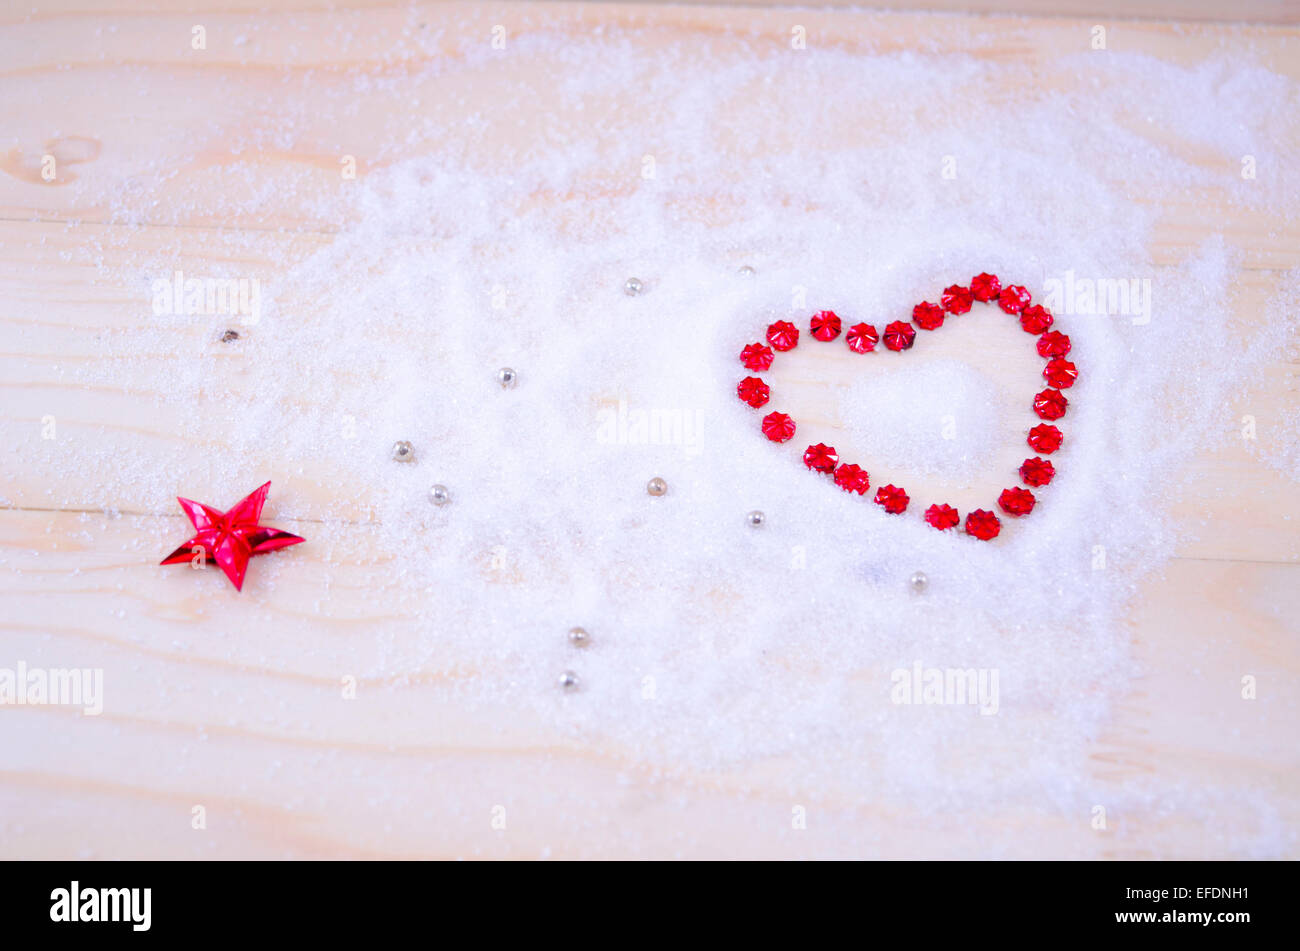 Con forma de corazón de estrella roja ornamentos en polvo blanco Foto de stock